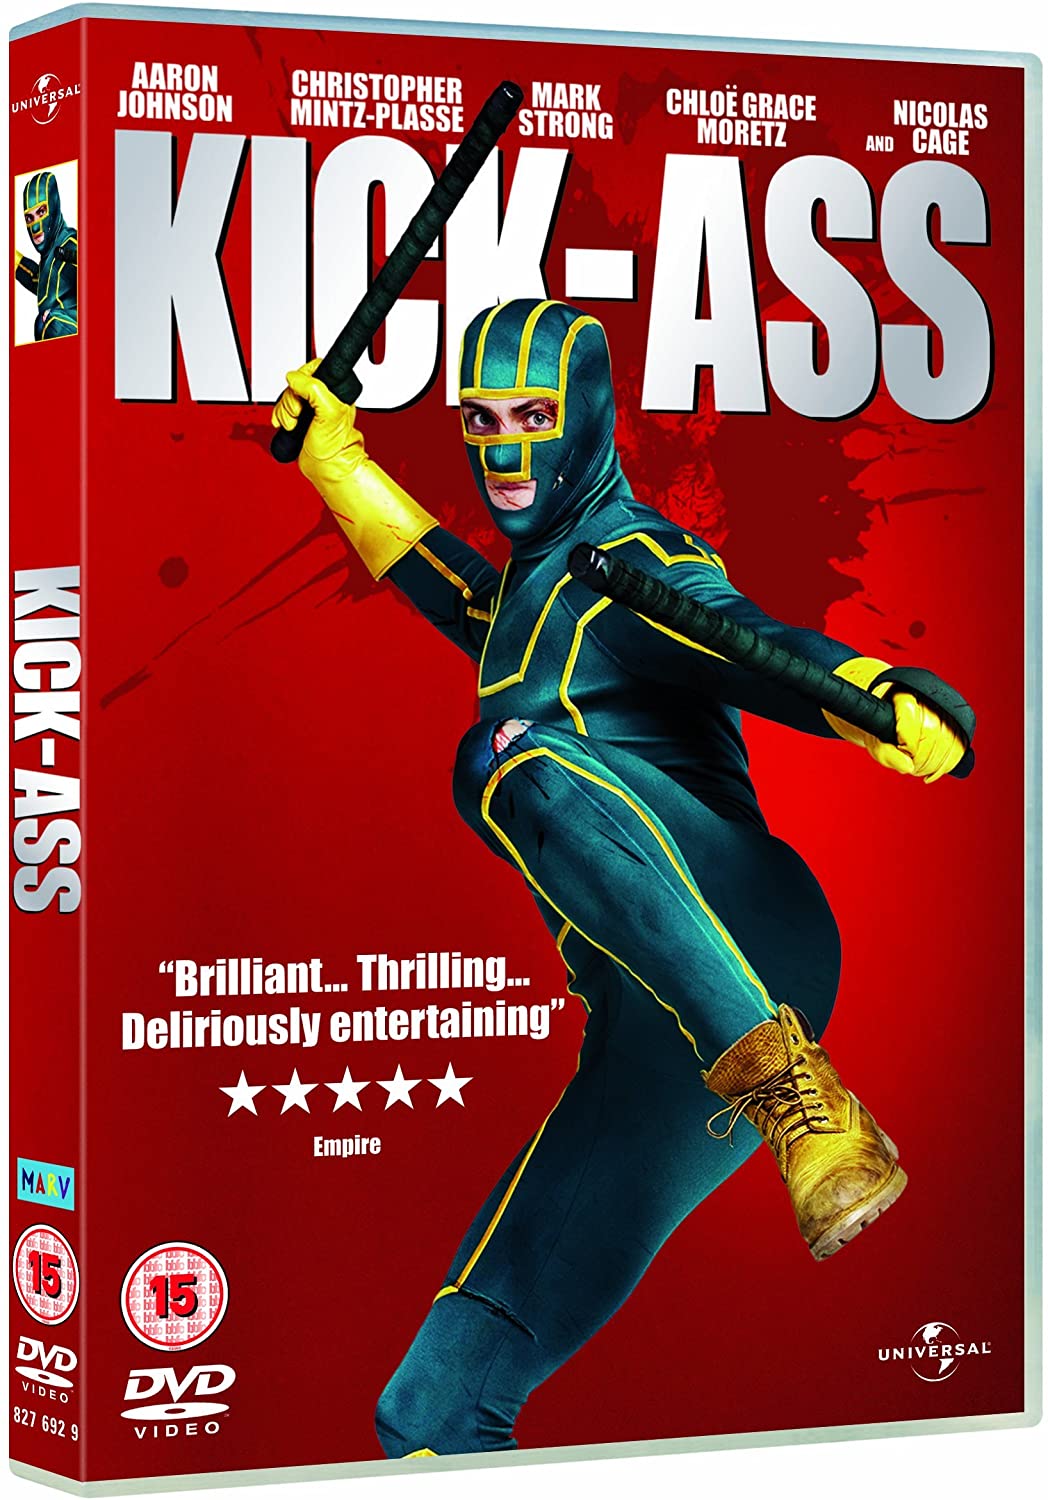 Kick-Ass [2010] - Action/Comedy [DVD]